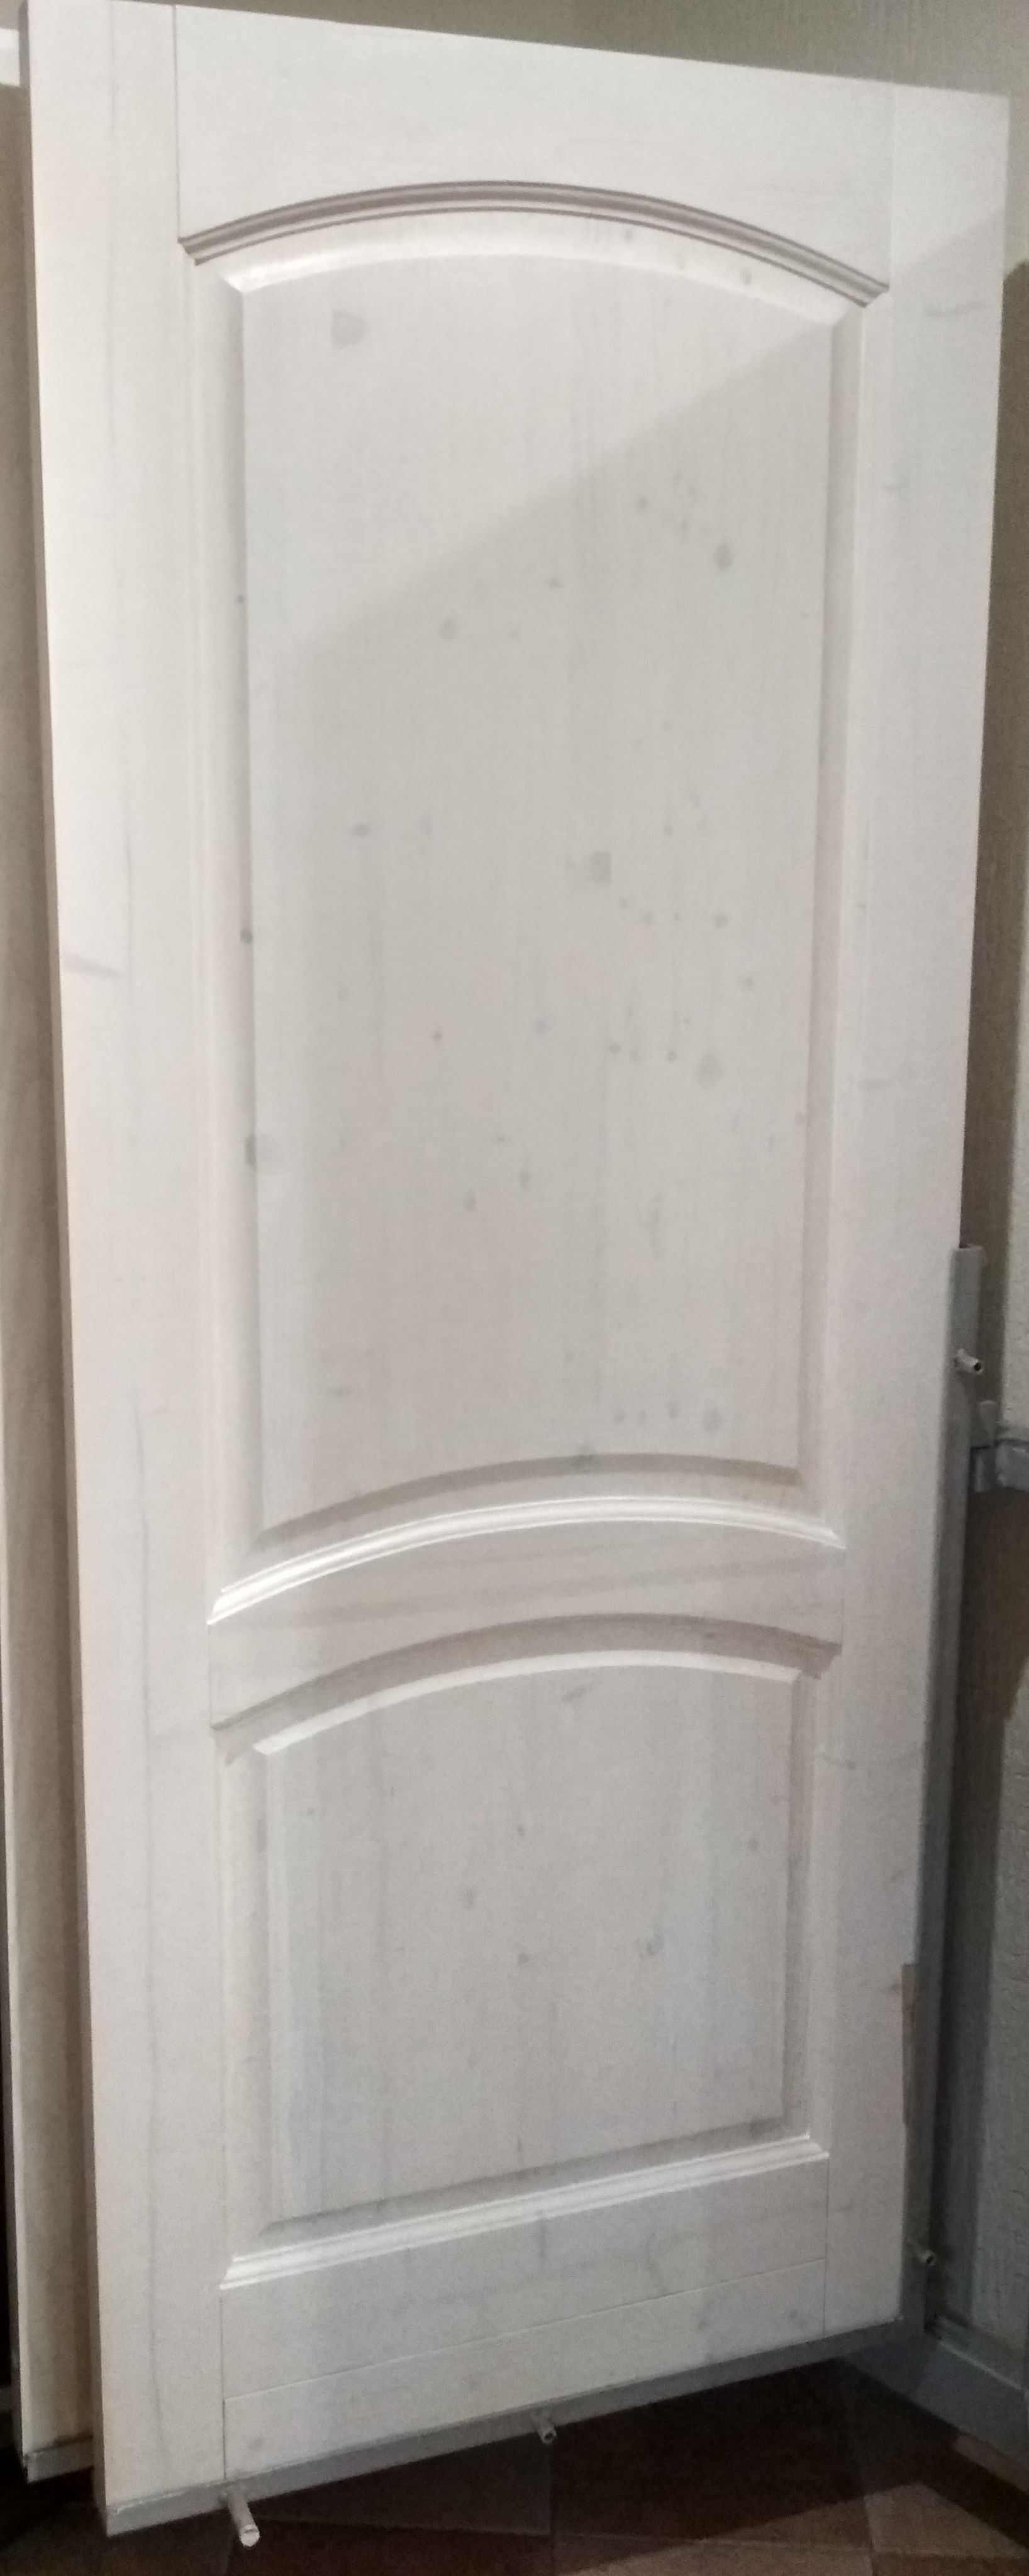 Дверь арочная, массив хвойных пород с сучком - под остекление